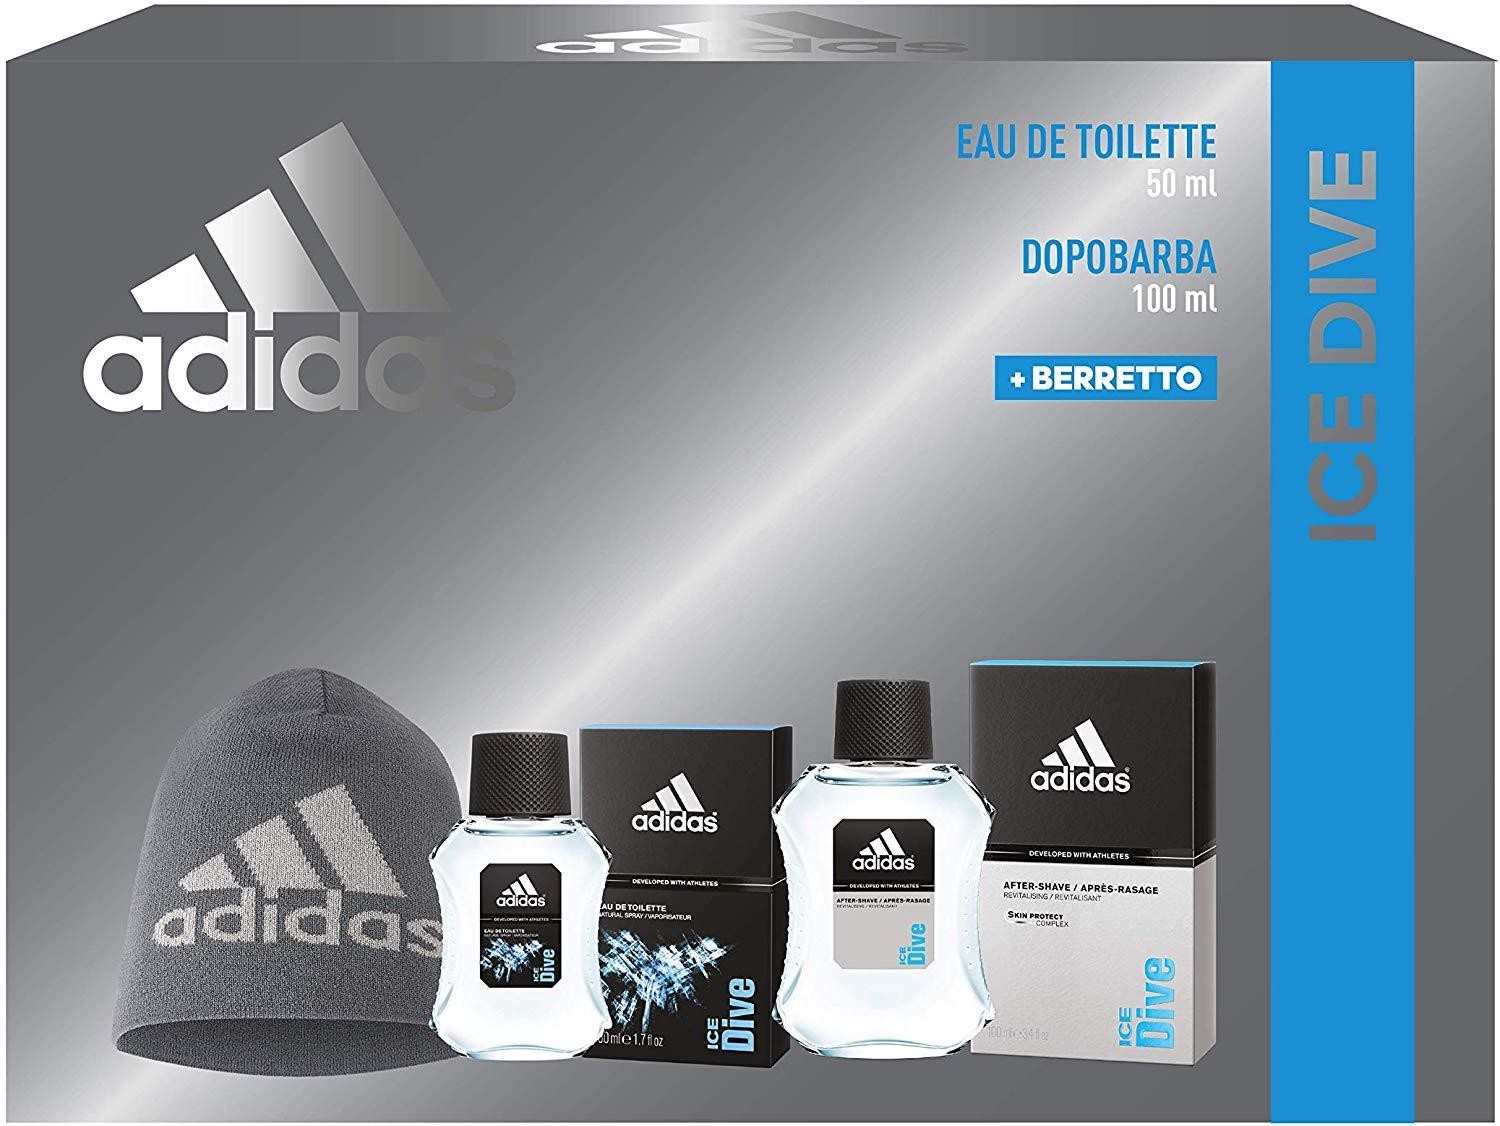 Adidas Confezione Regalo Uomo Ice Dive, Eau de Toilette 50 ml, Dopobarba  100 ml, Berretto di